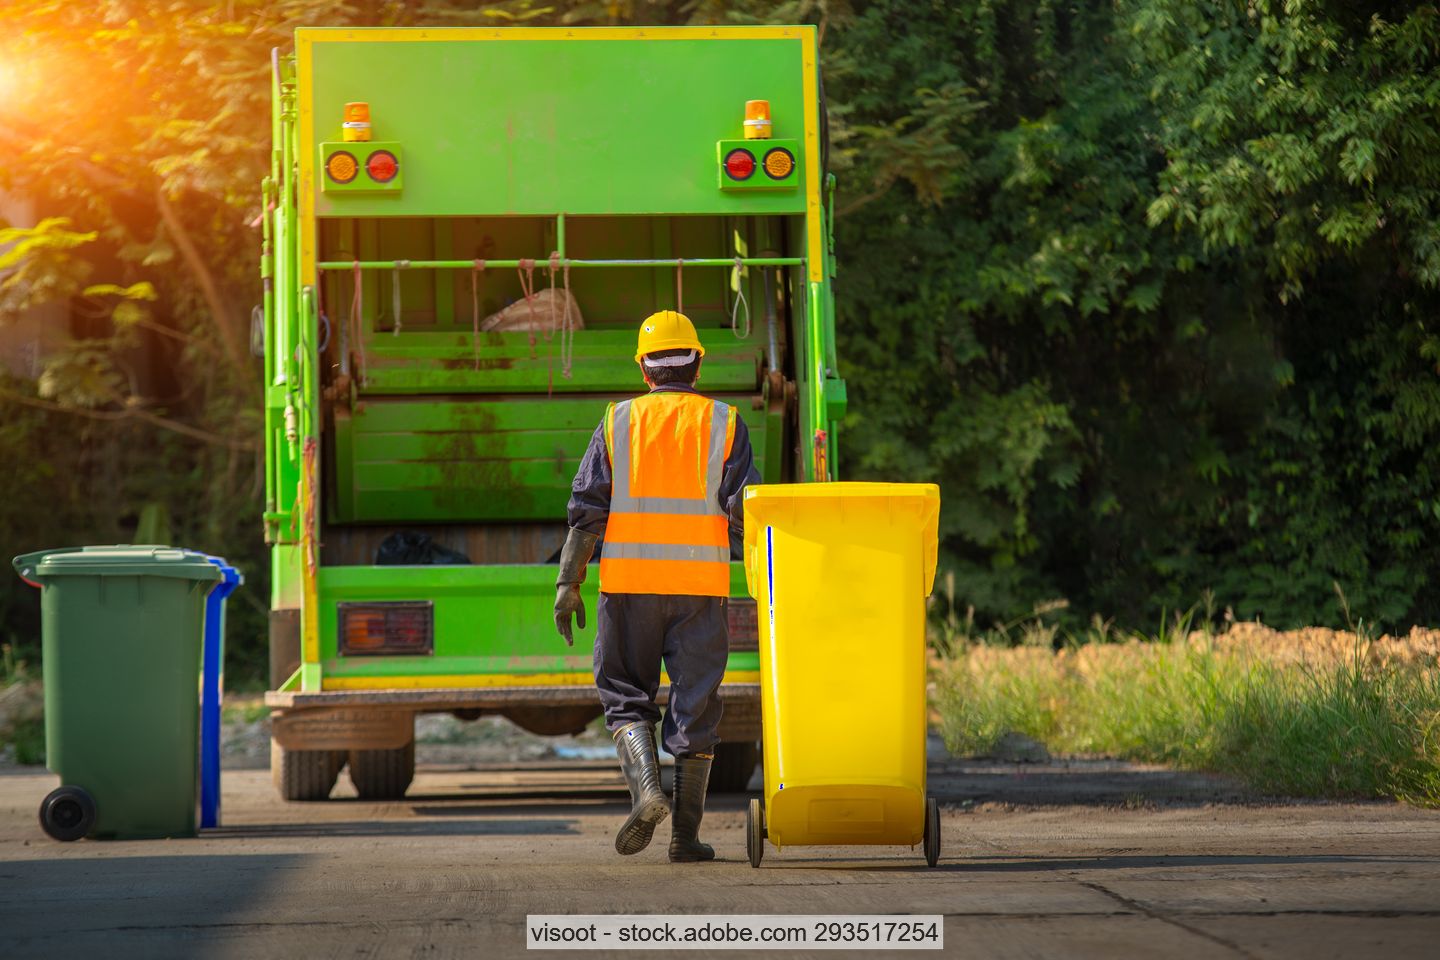 Müllwerker auf Straße mit gelber Abfalltonne hinter grünem Müllsammelfahrzeug, am Rand weitere Mülltonnen im Hintergrund Bäume